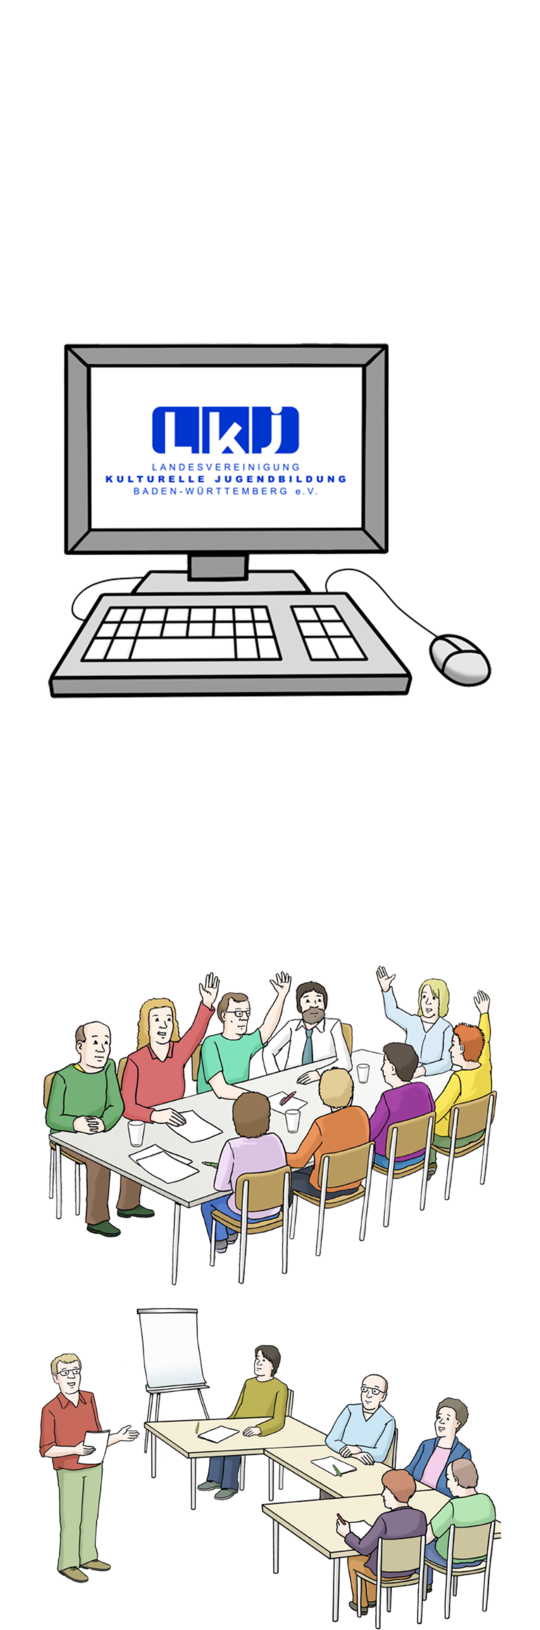 Illustration Computer mit LKJ Logo auf dem Display (oben) und zwei Tische mit Personengruppen, die entweder die Hand heben oder zuhören (unten)